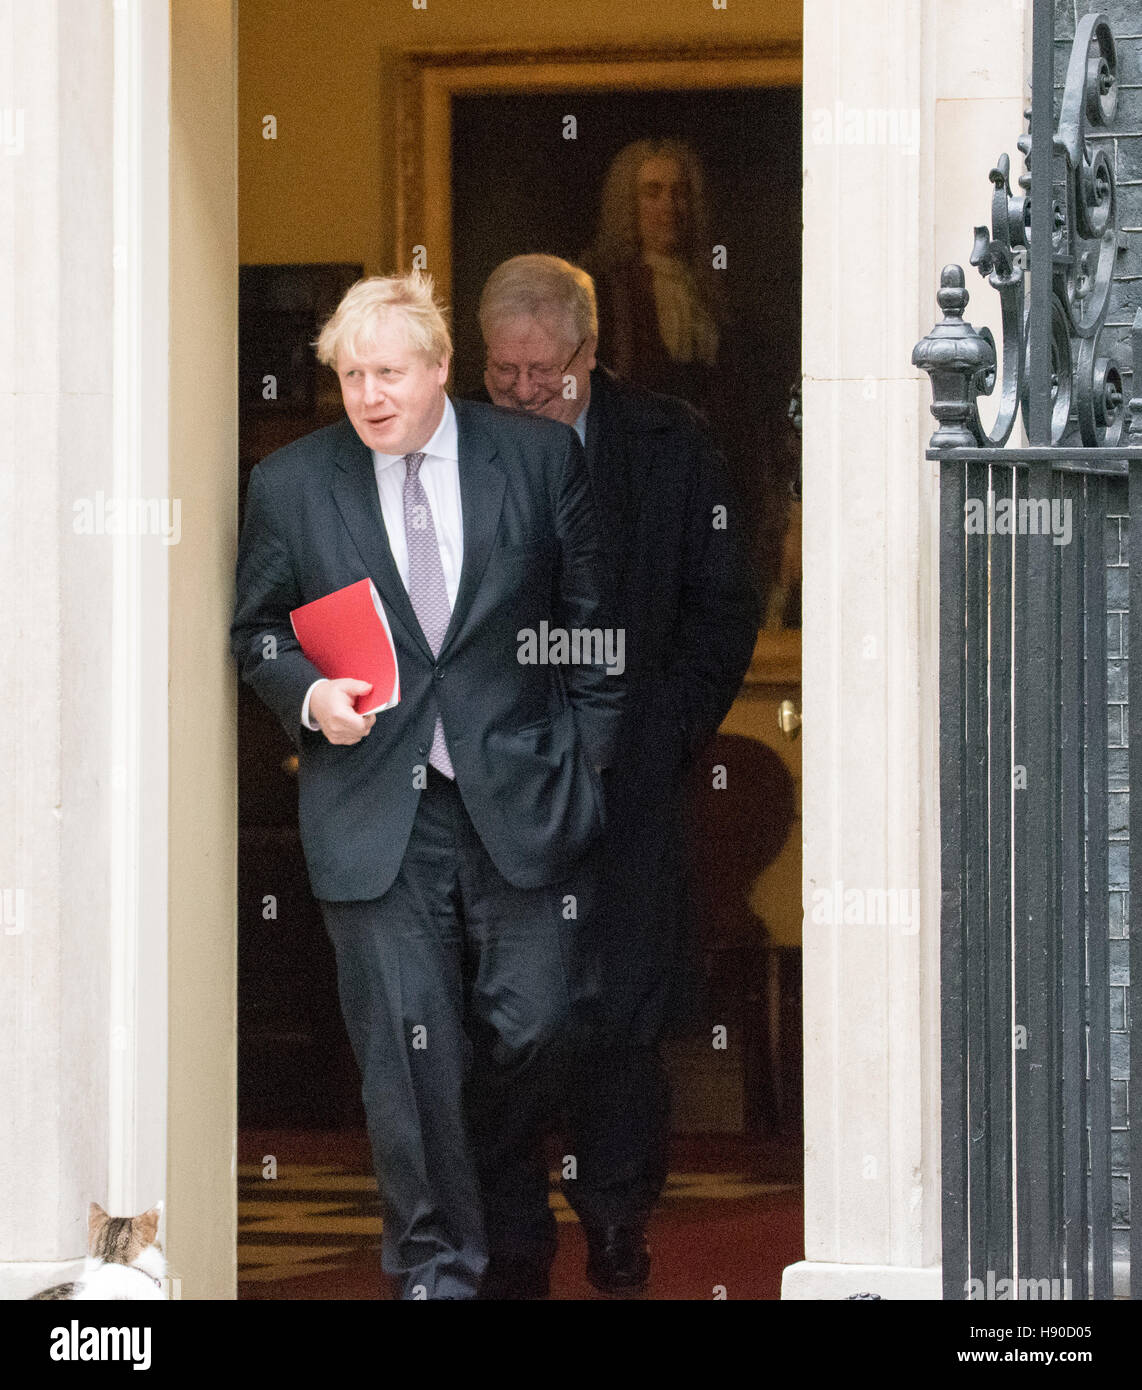 Londres, Royaume-Uni. 10 janvier, 2017. Boris Johnson, Secrétaire aux affaires étrangères, feuilles 10 Downing Street Crédit : Ian Davidson/Alamy Live News Banque D'Images